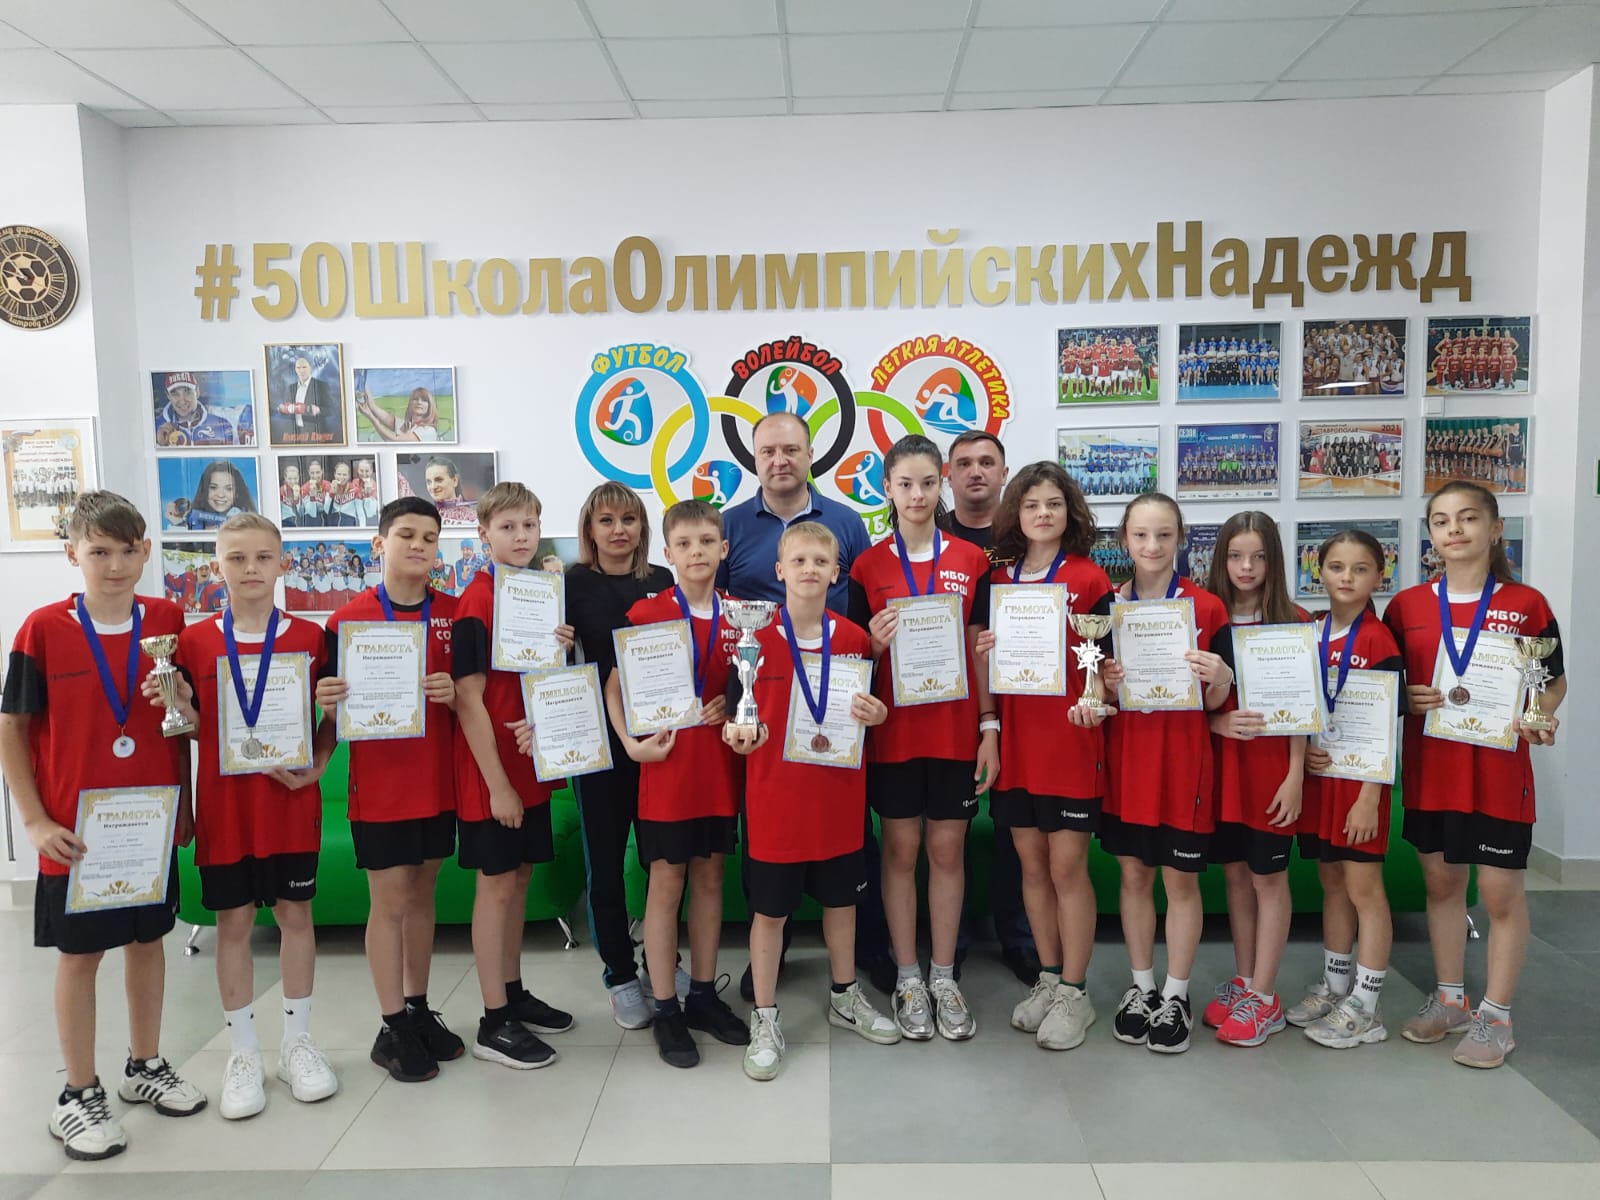 15 апреля в Ставрополе прошёл краевой этап Всероссийских соревнований школьников, где наша команда приняла участие и заняла 2 место!.